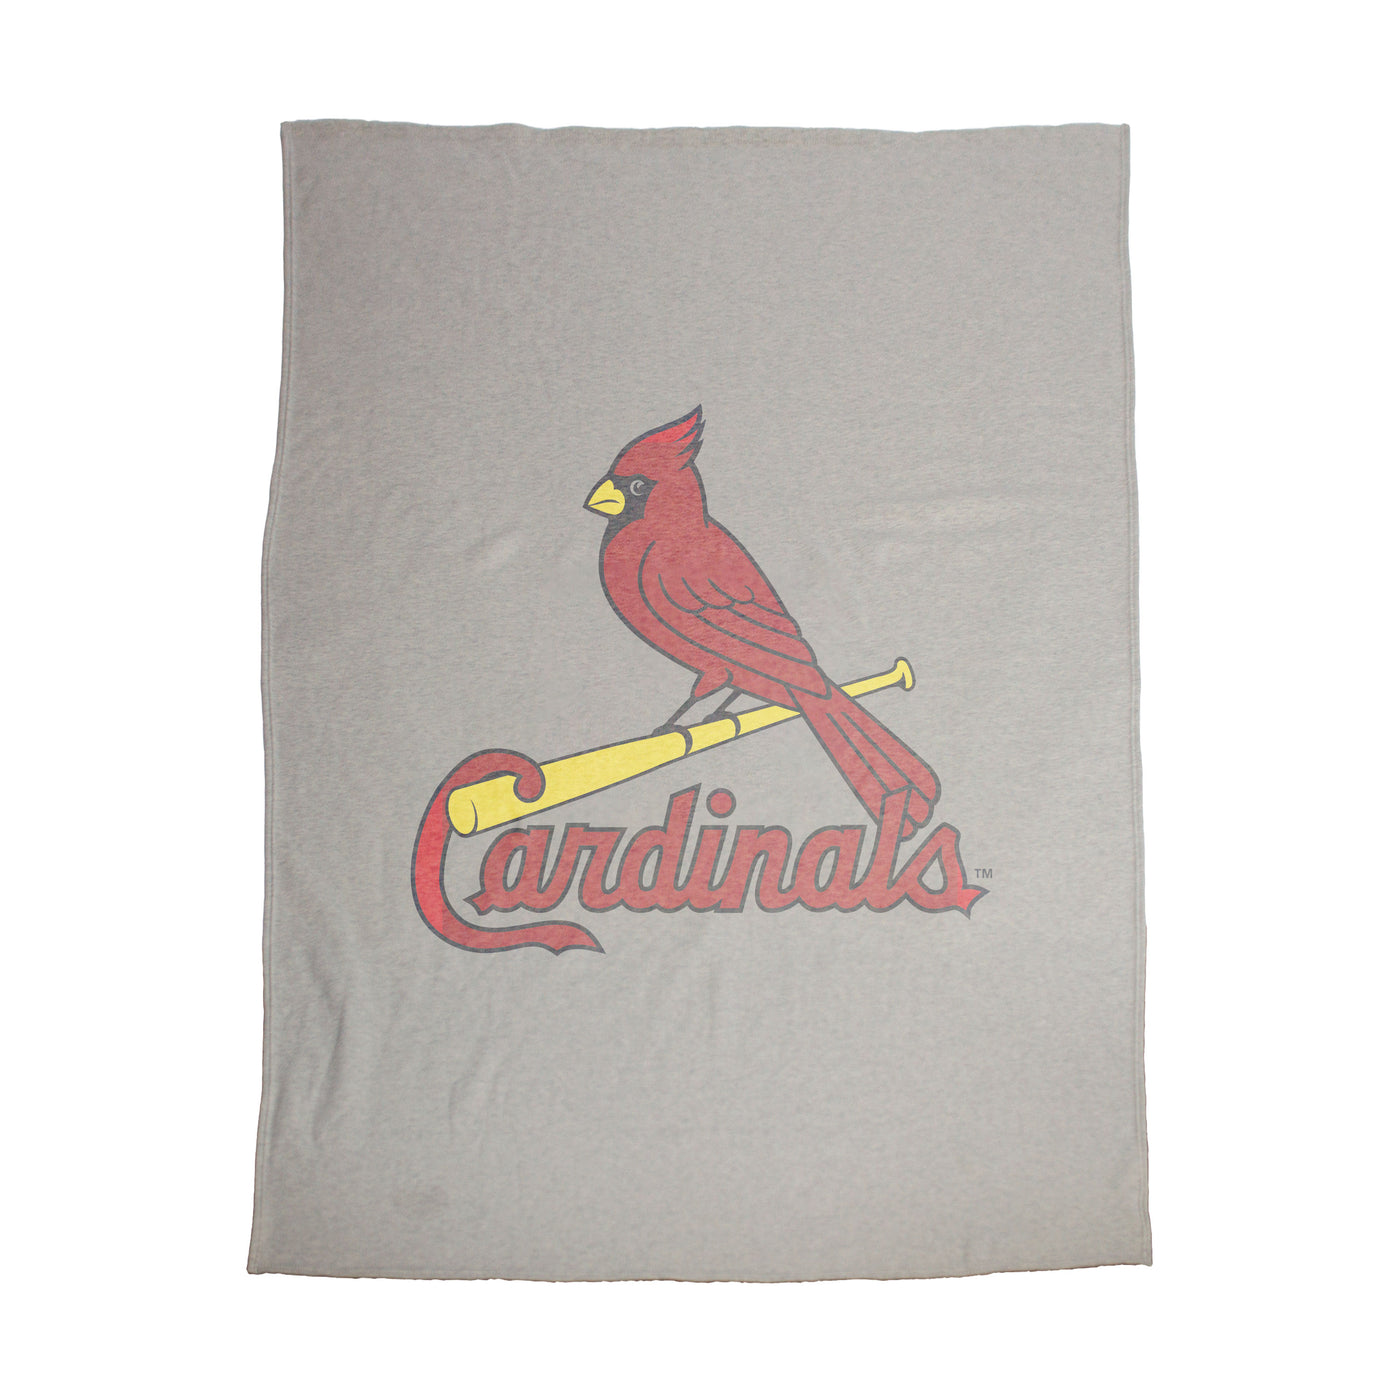 St. Louis Cardinals Oversized Logo Sublimated Sweatshirt Blanket